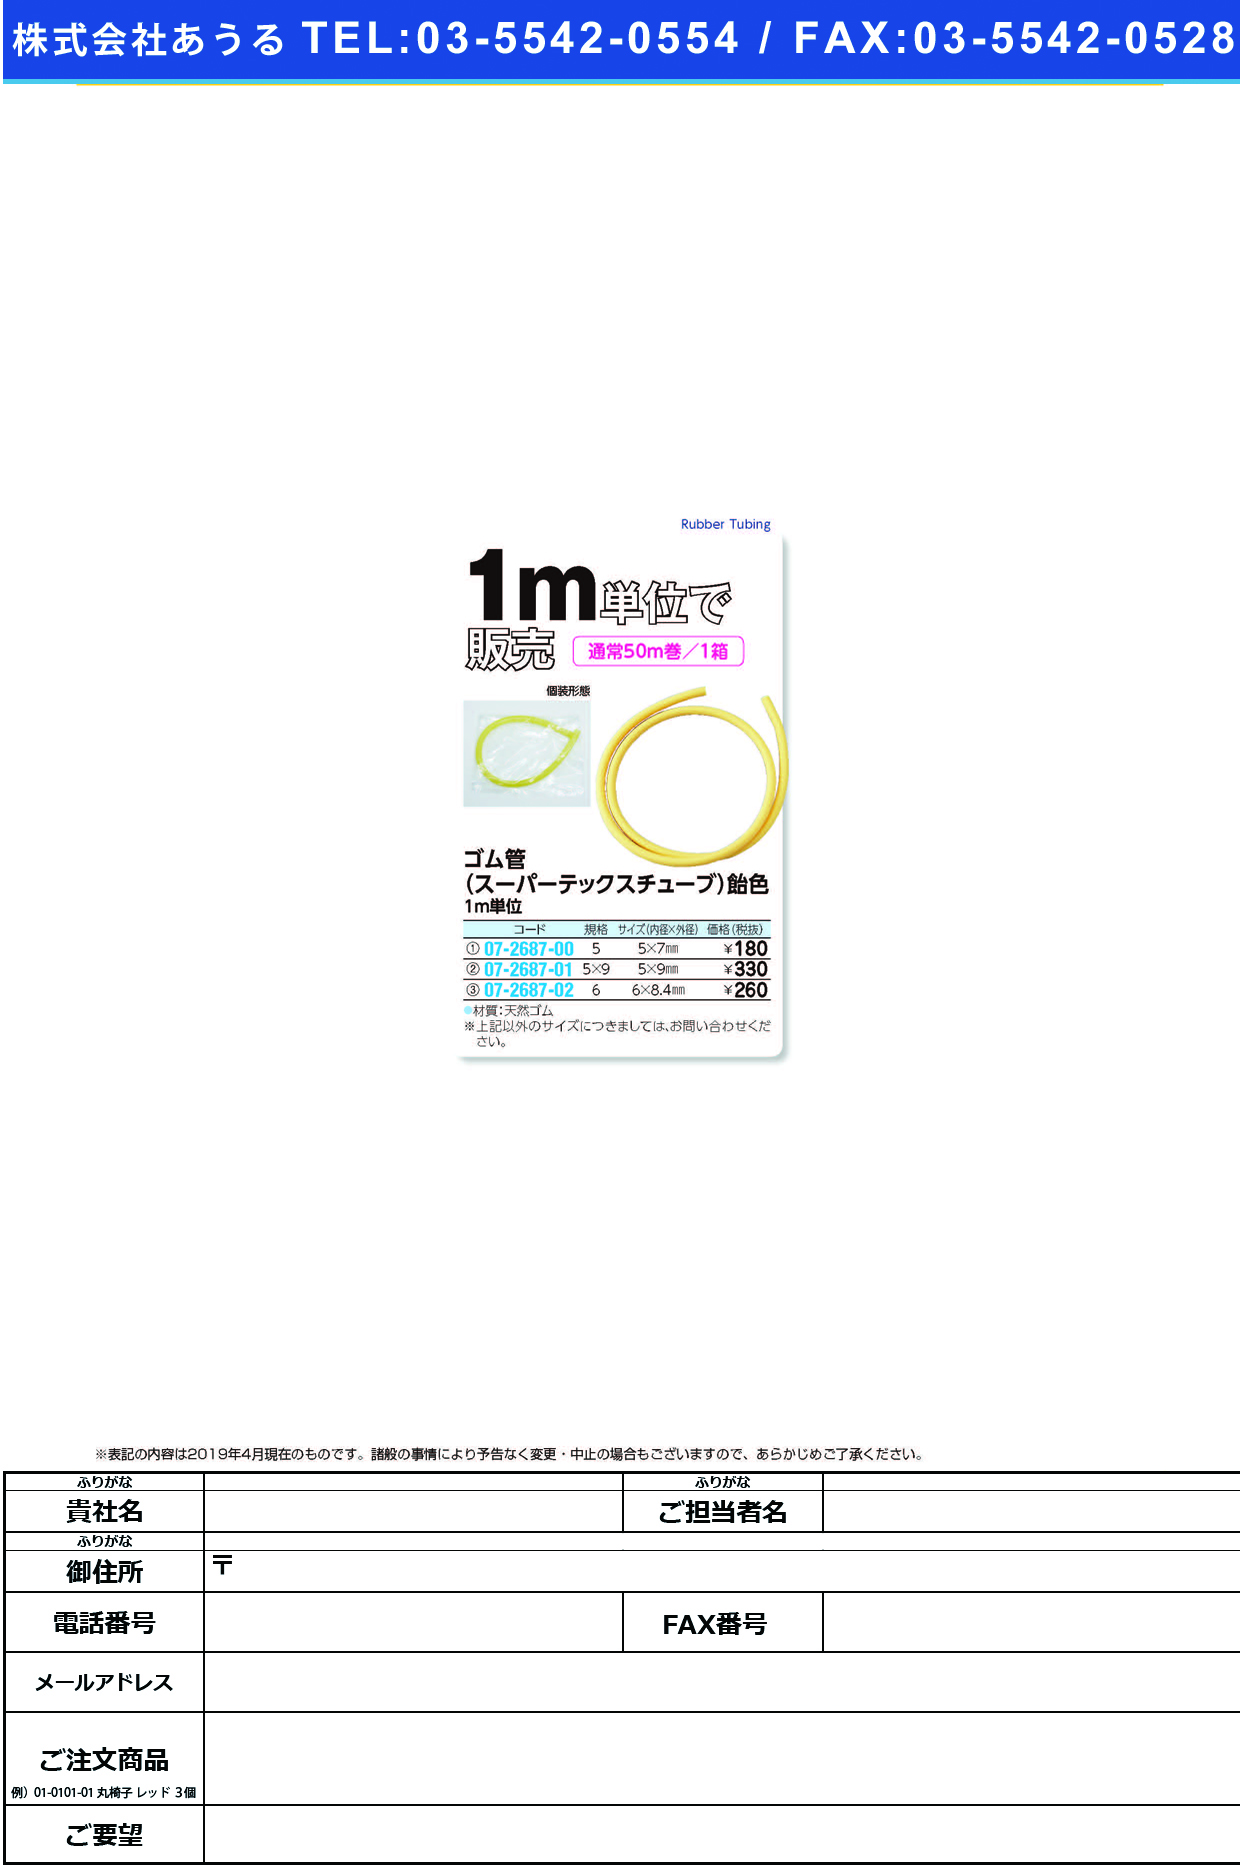 (07-2687-00)飴ゴム管（スーパーテックス）バラ NO.5(5X7MM) ｱﾒｺﾞﾑｶﾝ(ｽｰﾊﾟｰ)ﾊﾞﾗ【1ｍ単位】【2019年カタログ商品】